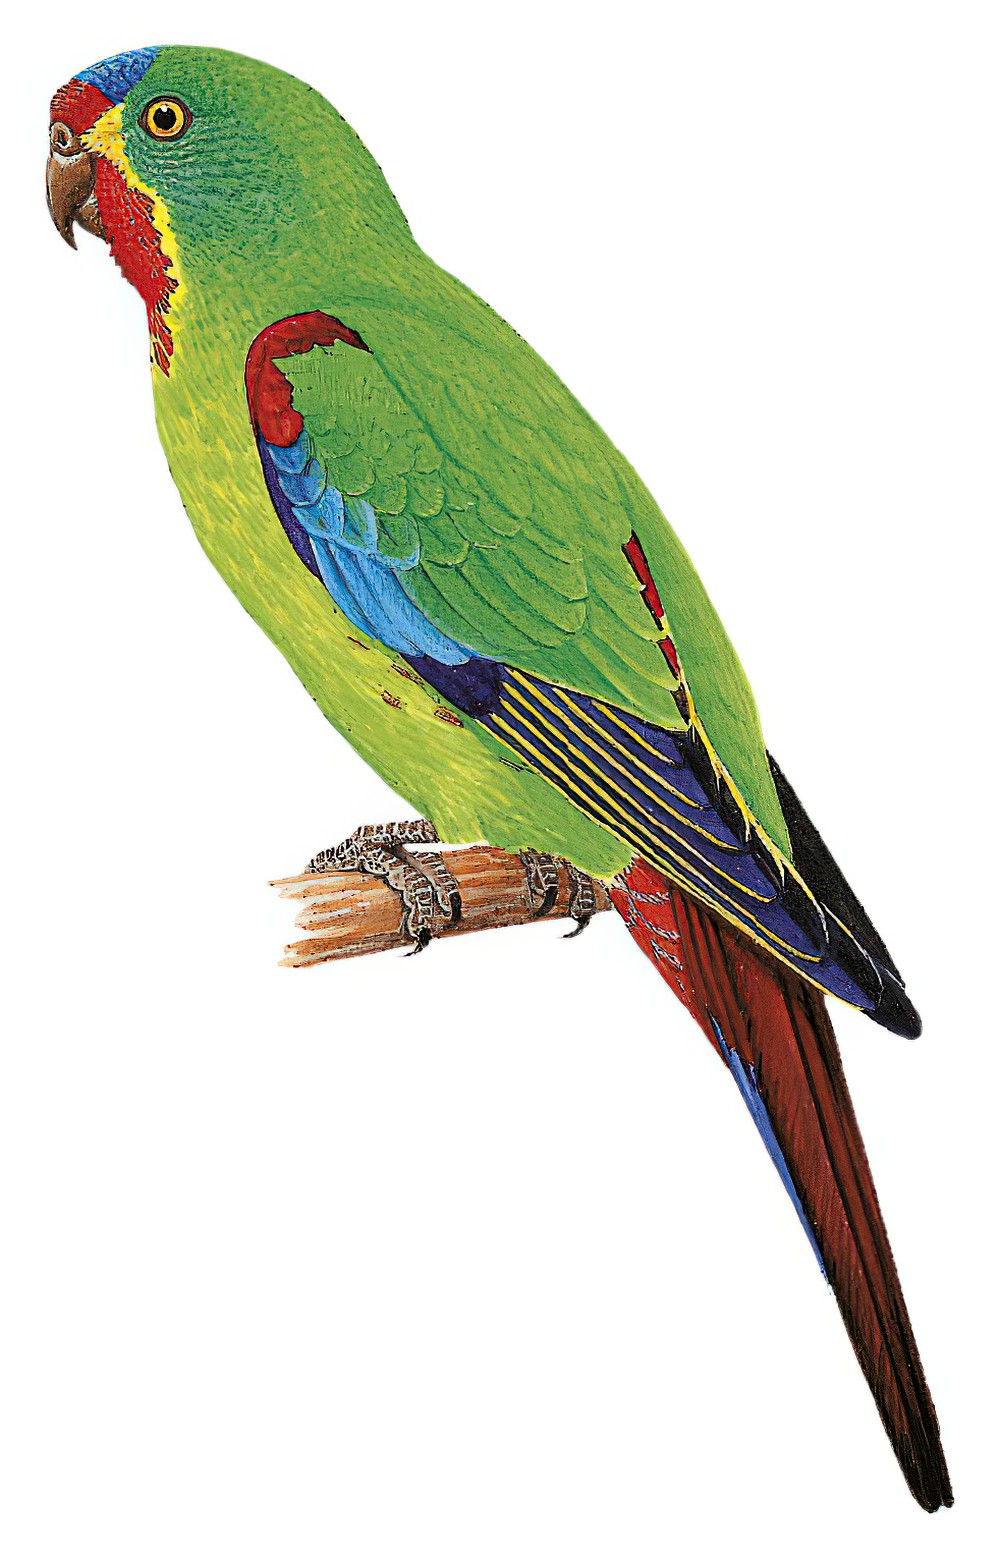 Swift Parrot / Lathamus discolor